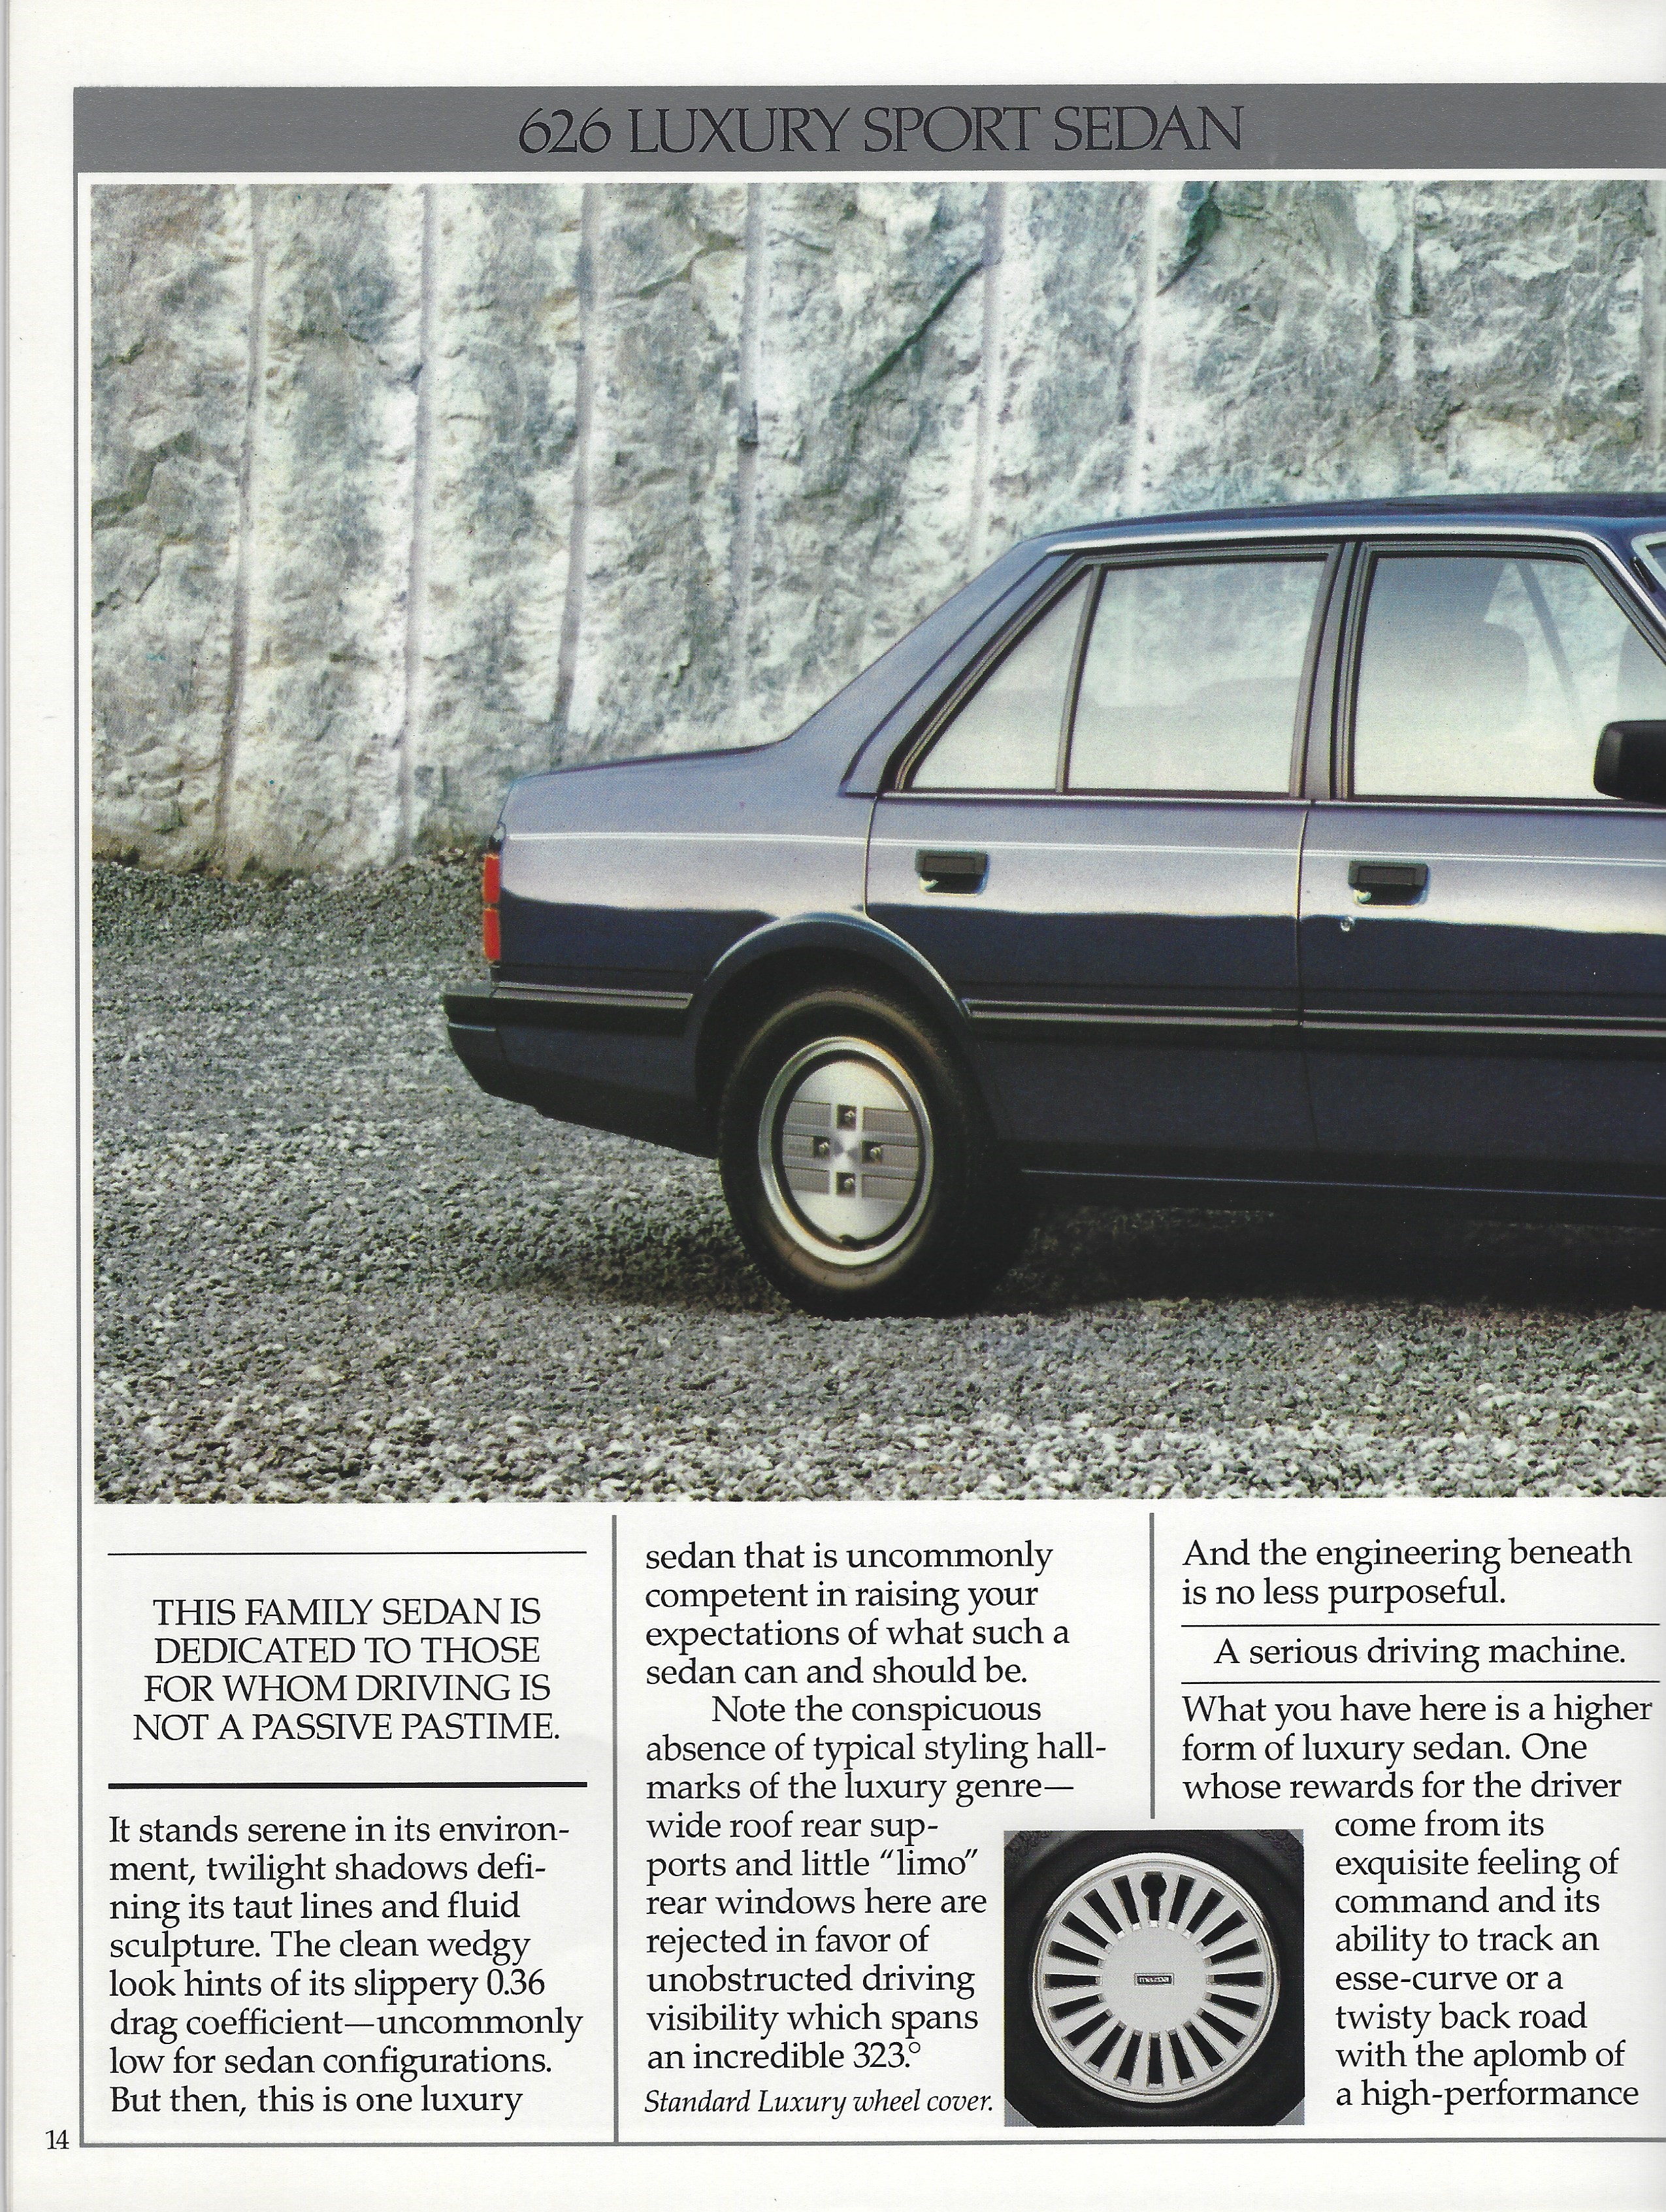 1985 Mazda 626 Brochure 14